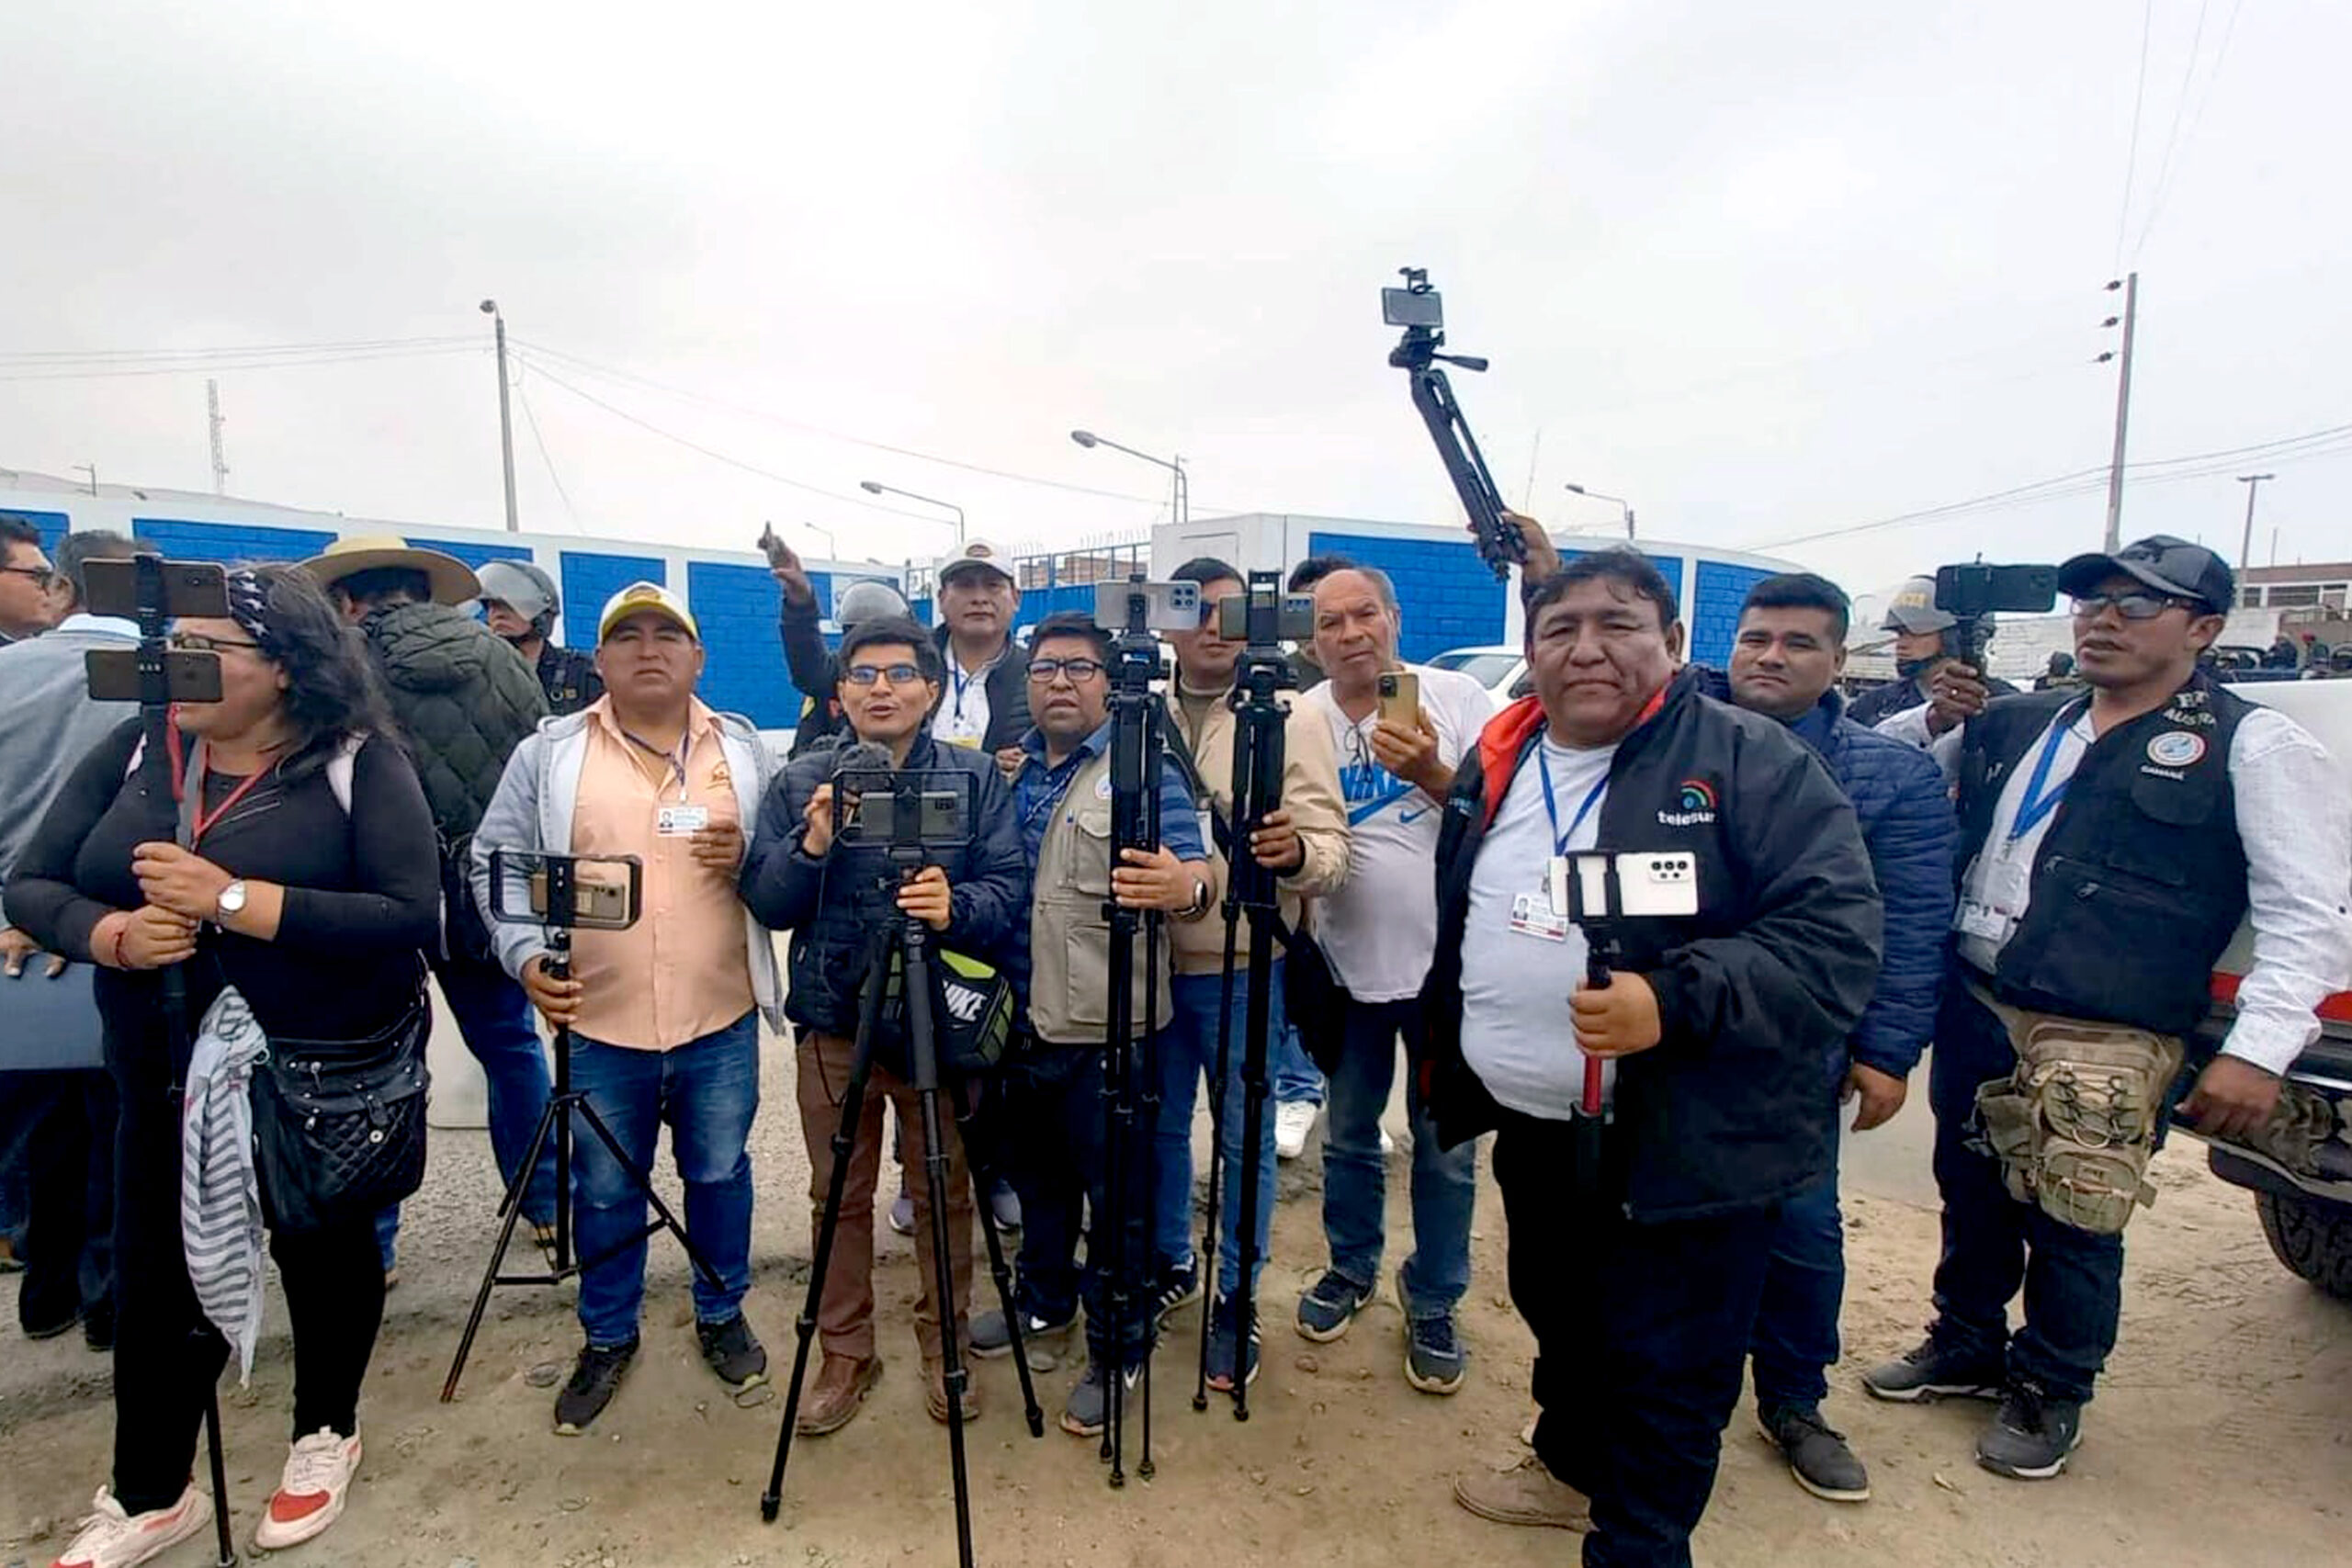 Camaná: Periodistas locales denuncian restricción de cobertura de actividad oficial